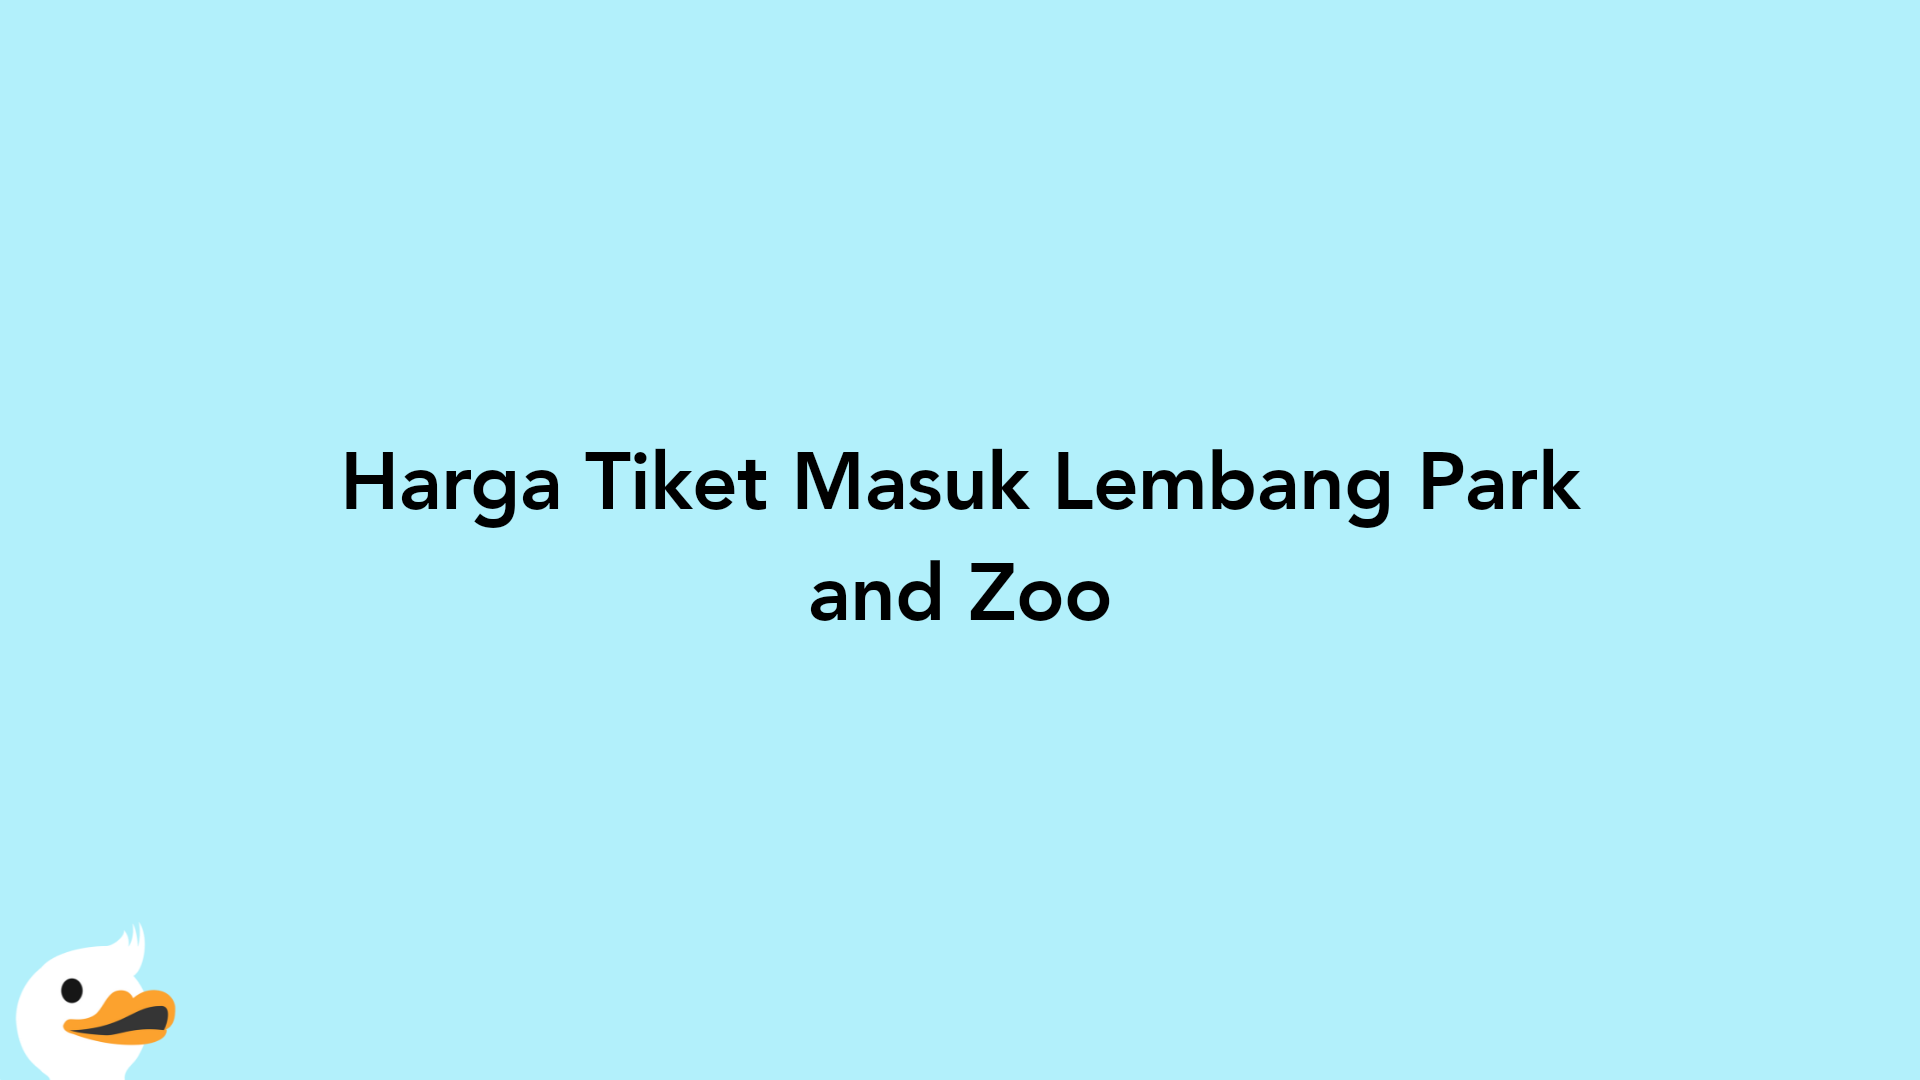 Harga Tiket Masuk Lembang Park and Zoo